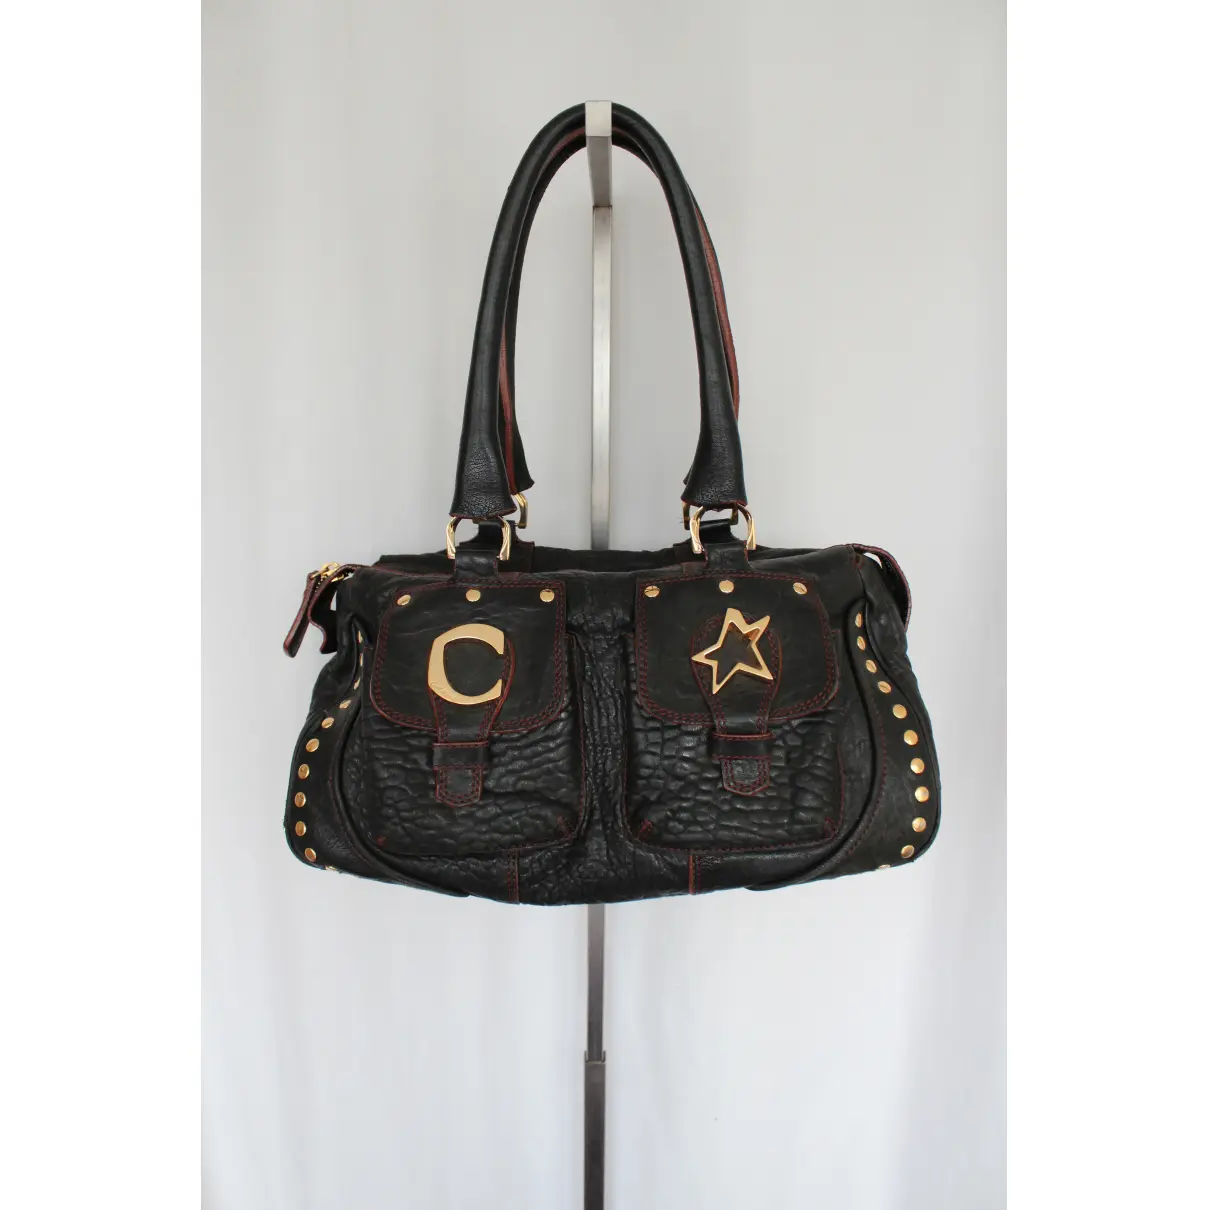 Buy Corto Moltedo Leather handbag online